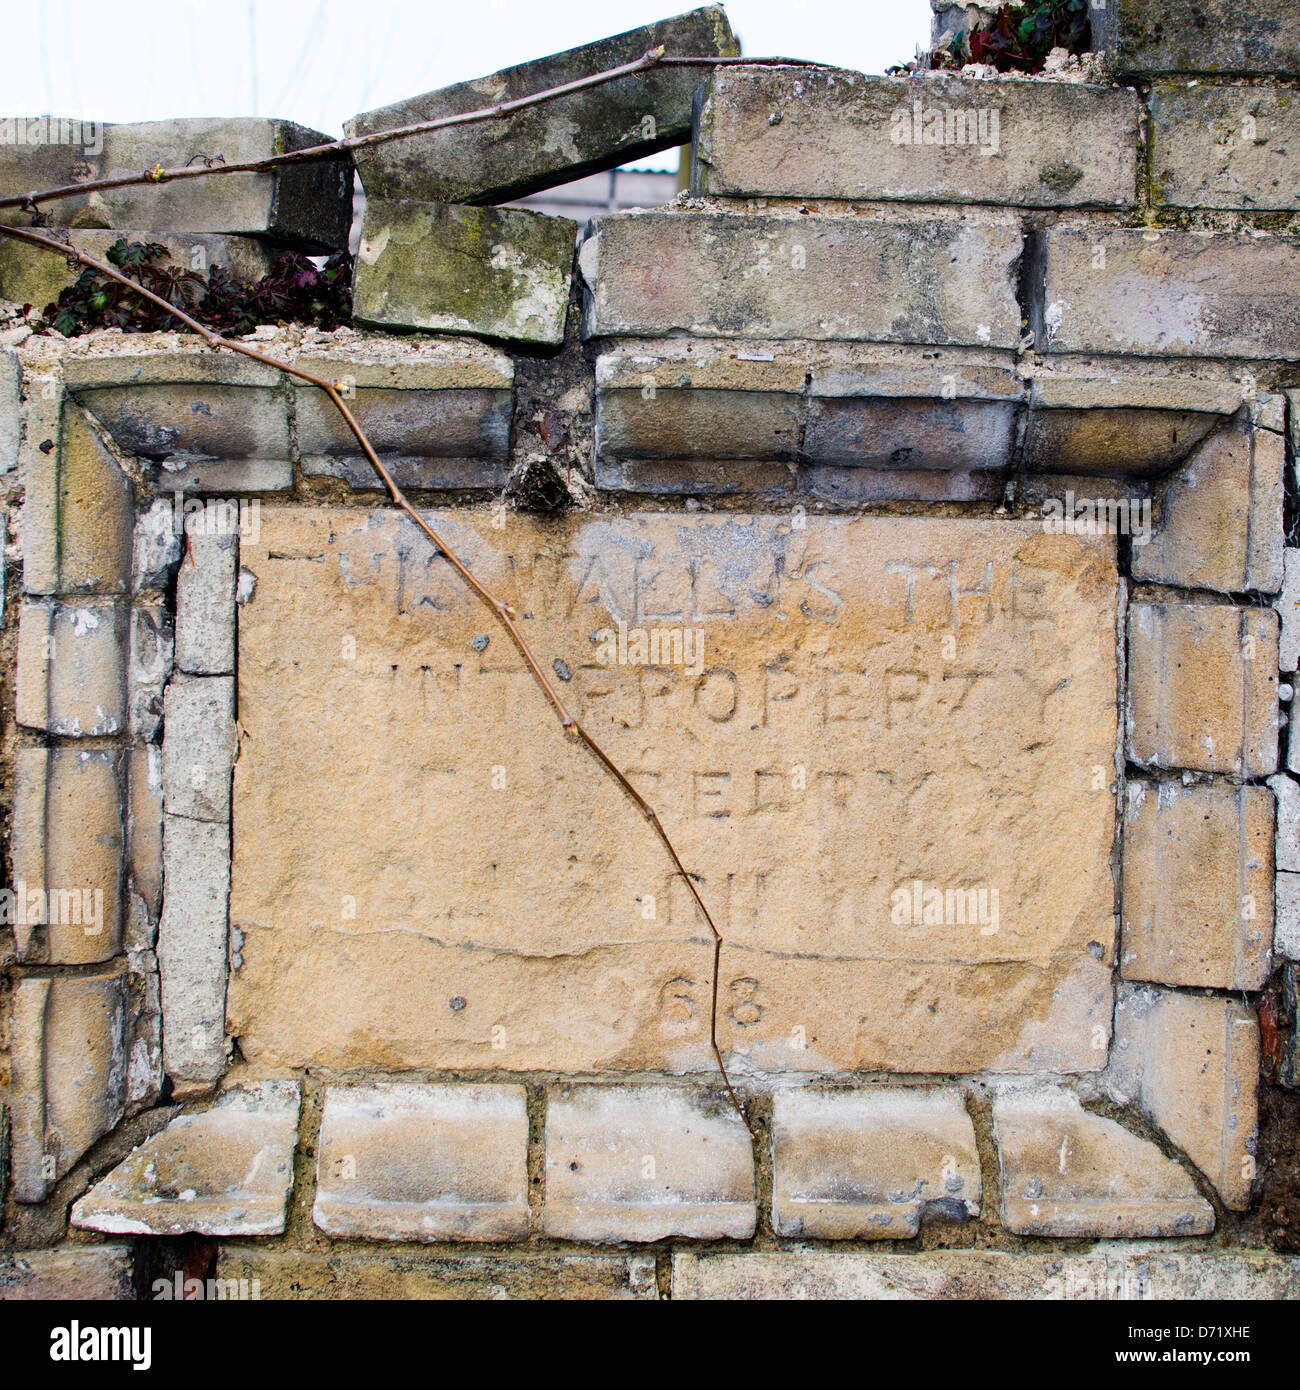 Una tableta de piedra situado en un viejo muro, marcando la titularidad de la pared. La descolorida inscripción sugiere del siglo XIX. Foto de stock